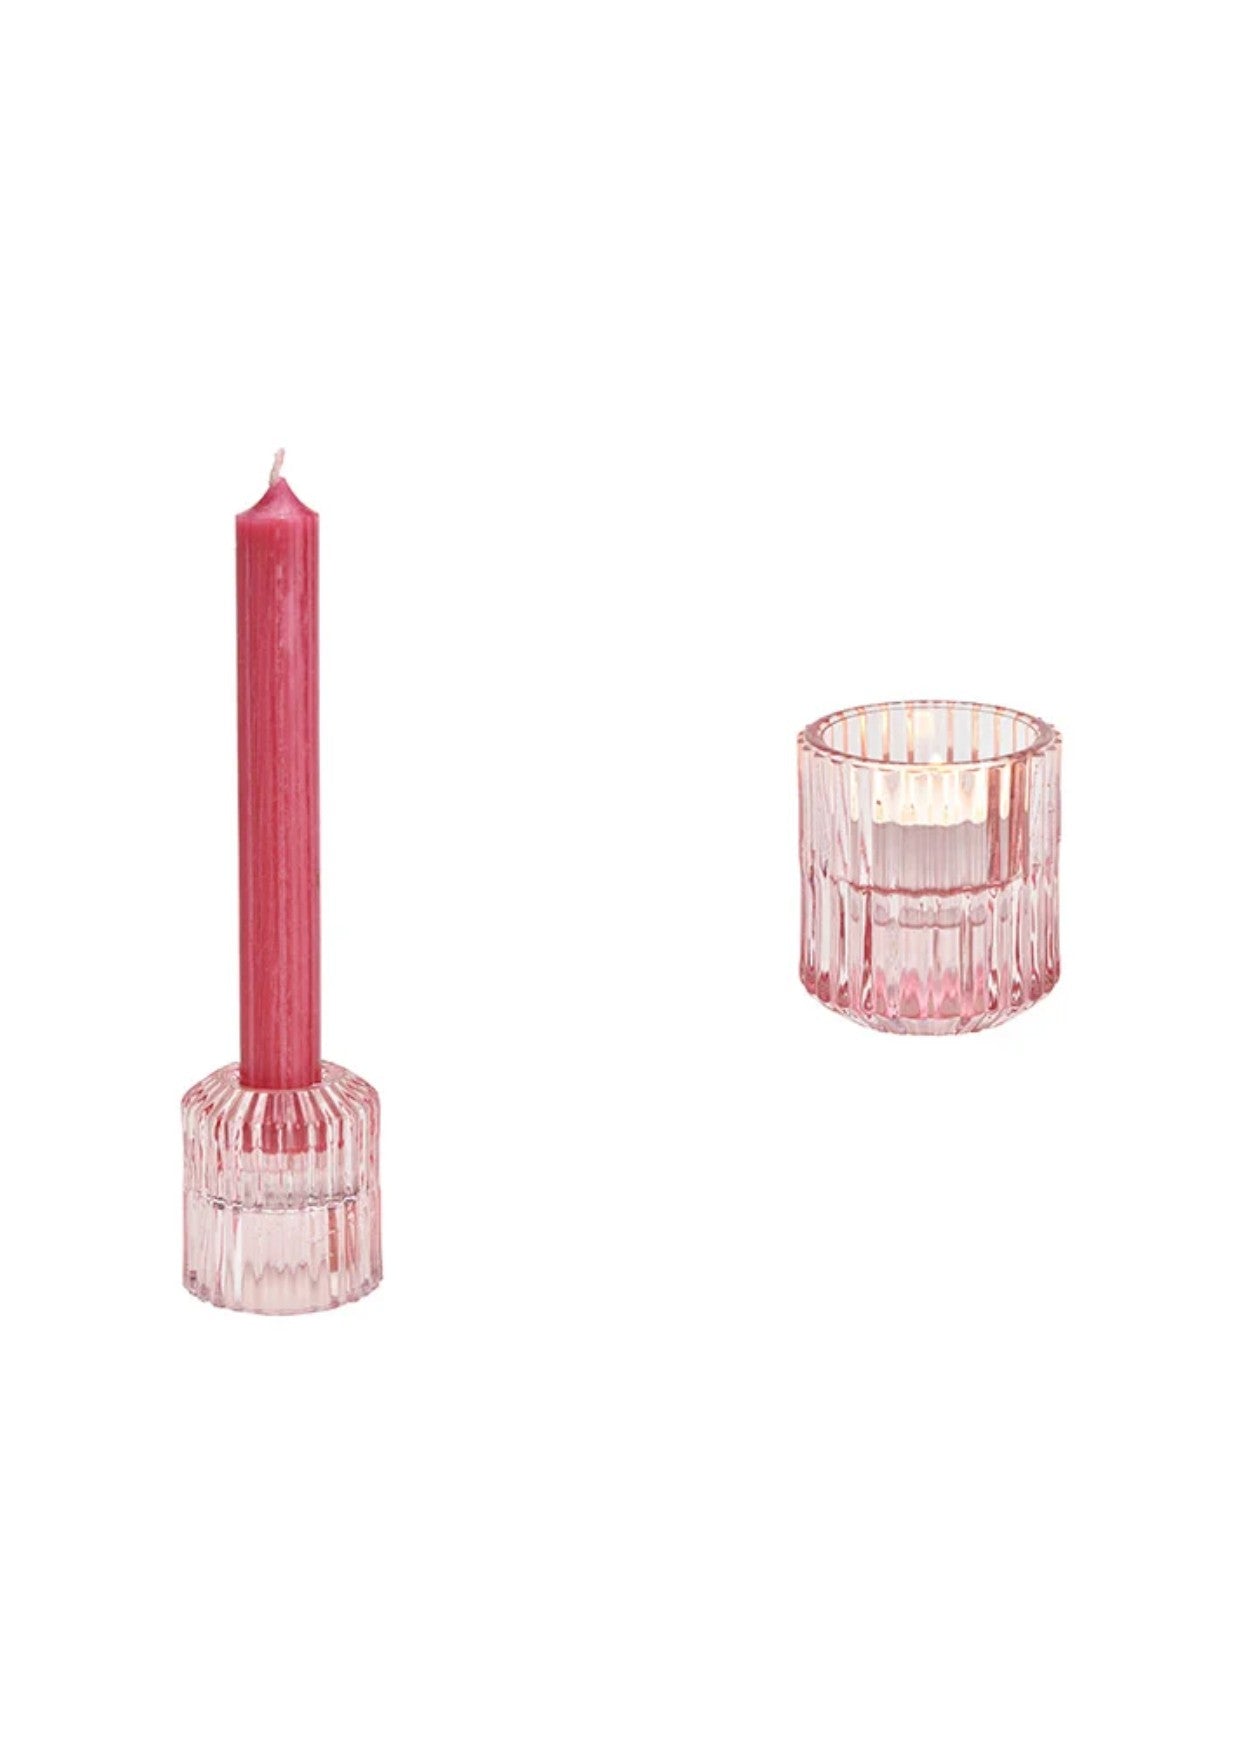 Kerzenhalter mit Doppelfunktion für Teelicht und Stabkerze | verschiedene Farben